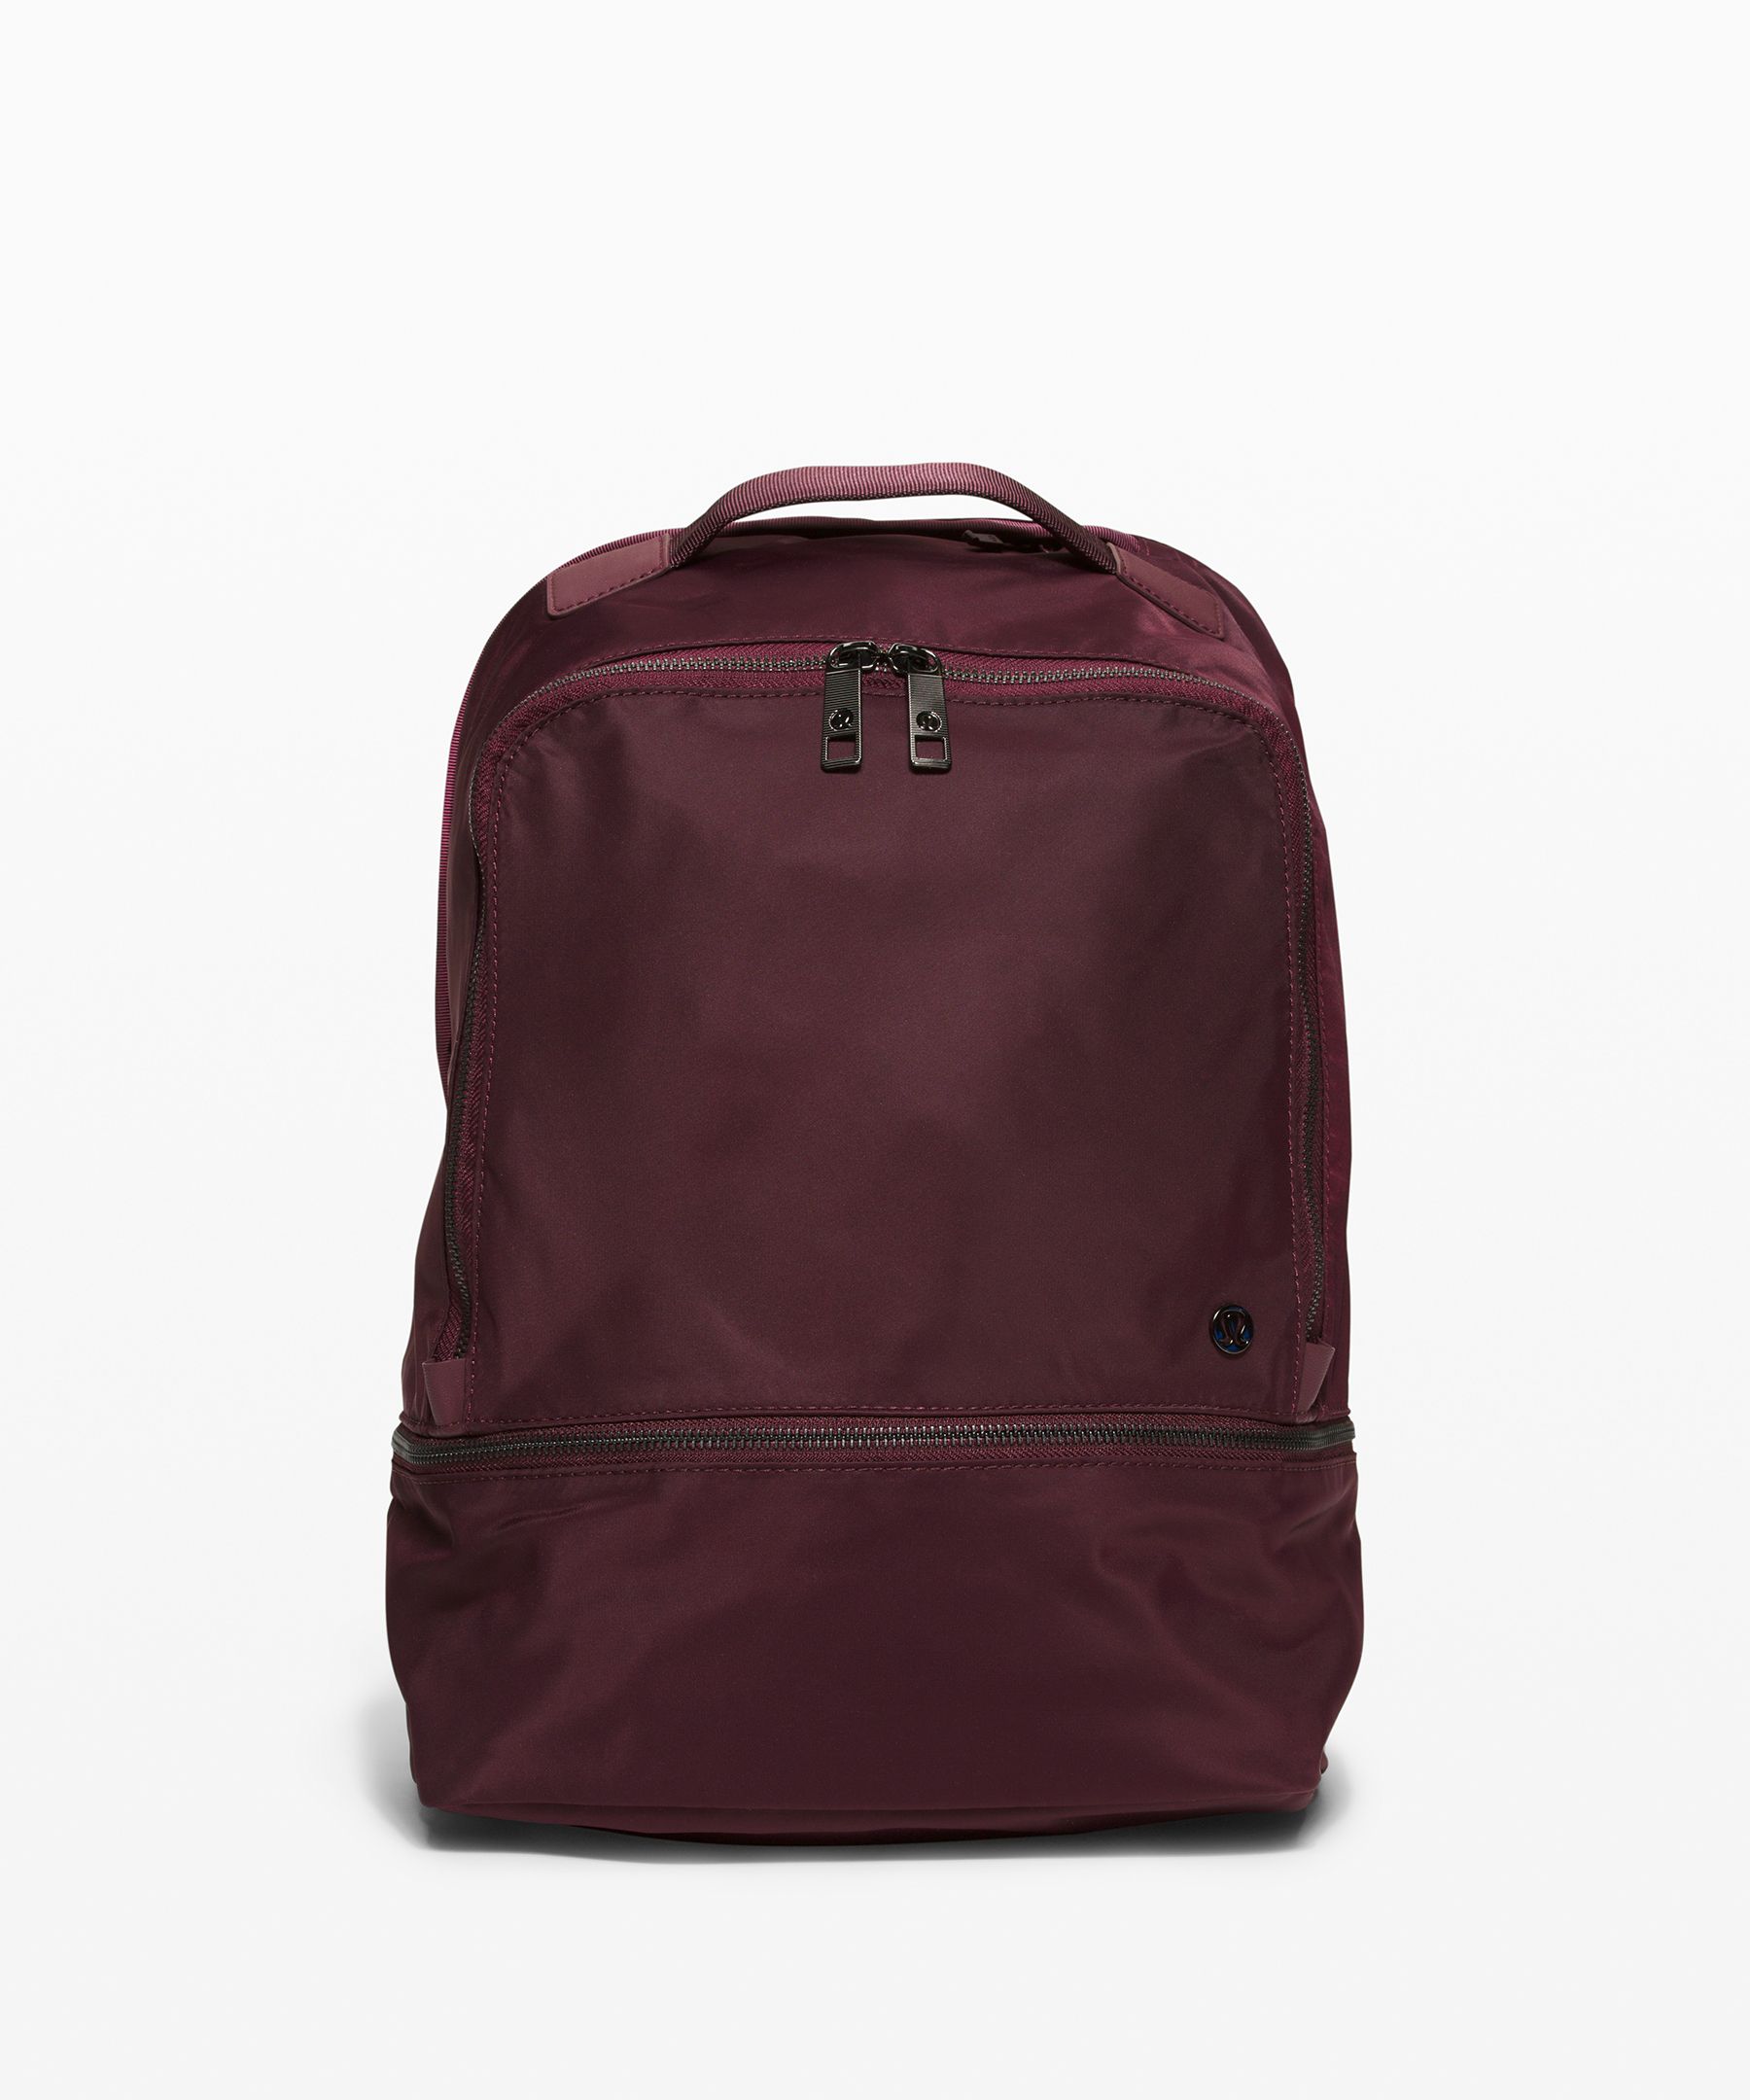 lululemon purple backpack